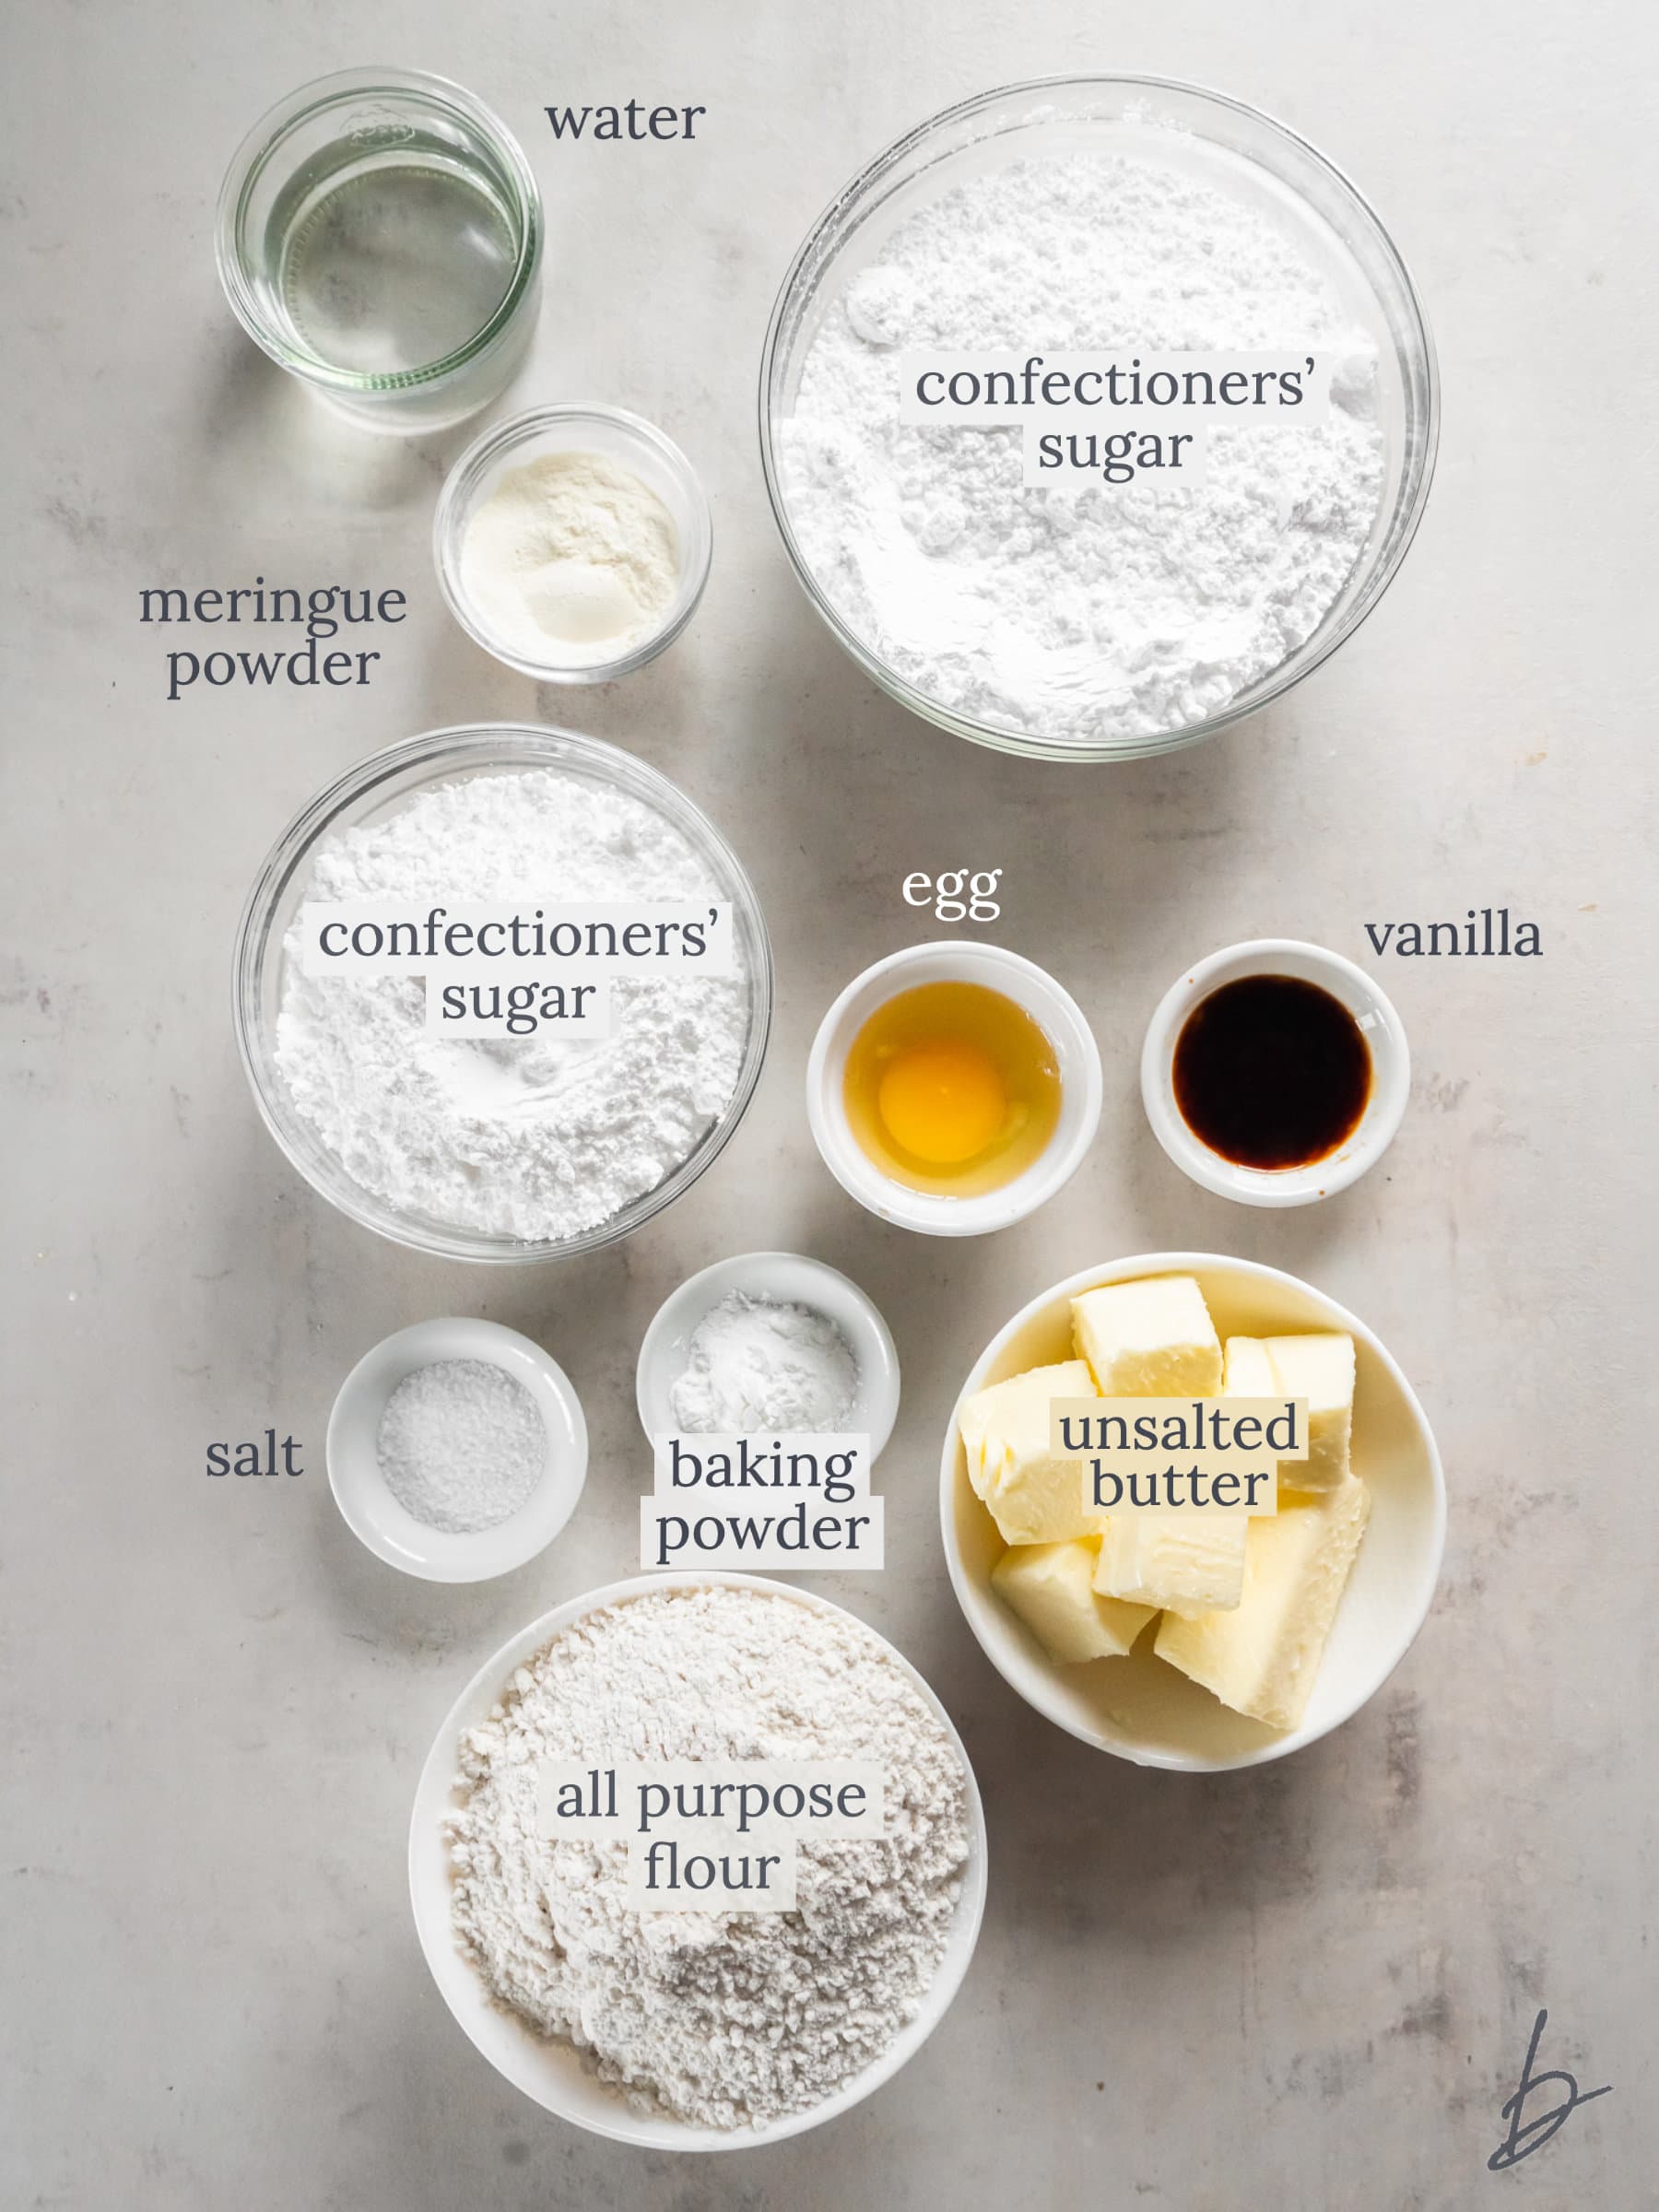 bowls of ingredients for snowflake cookies.